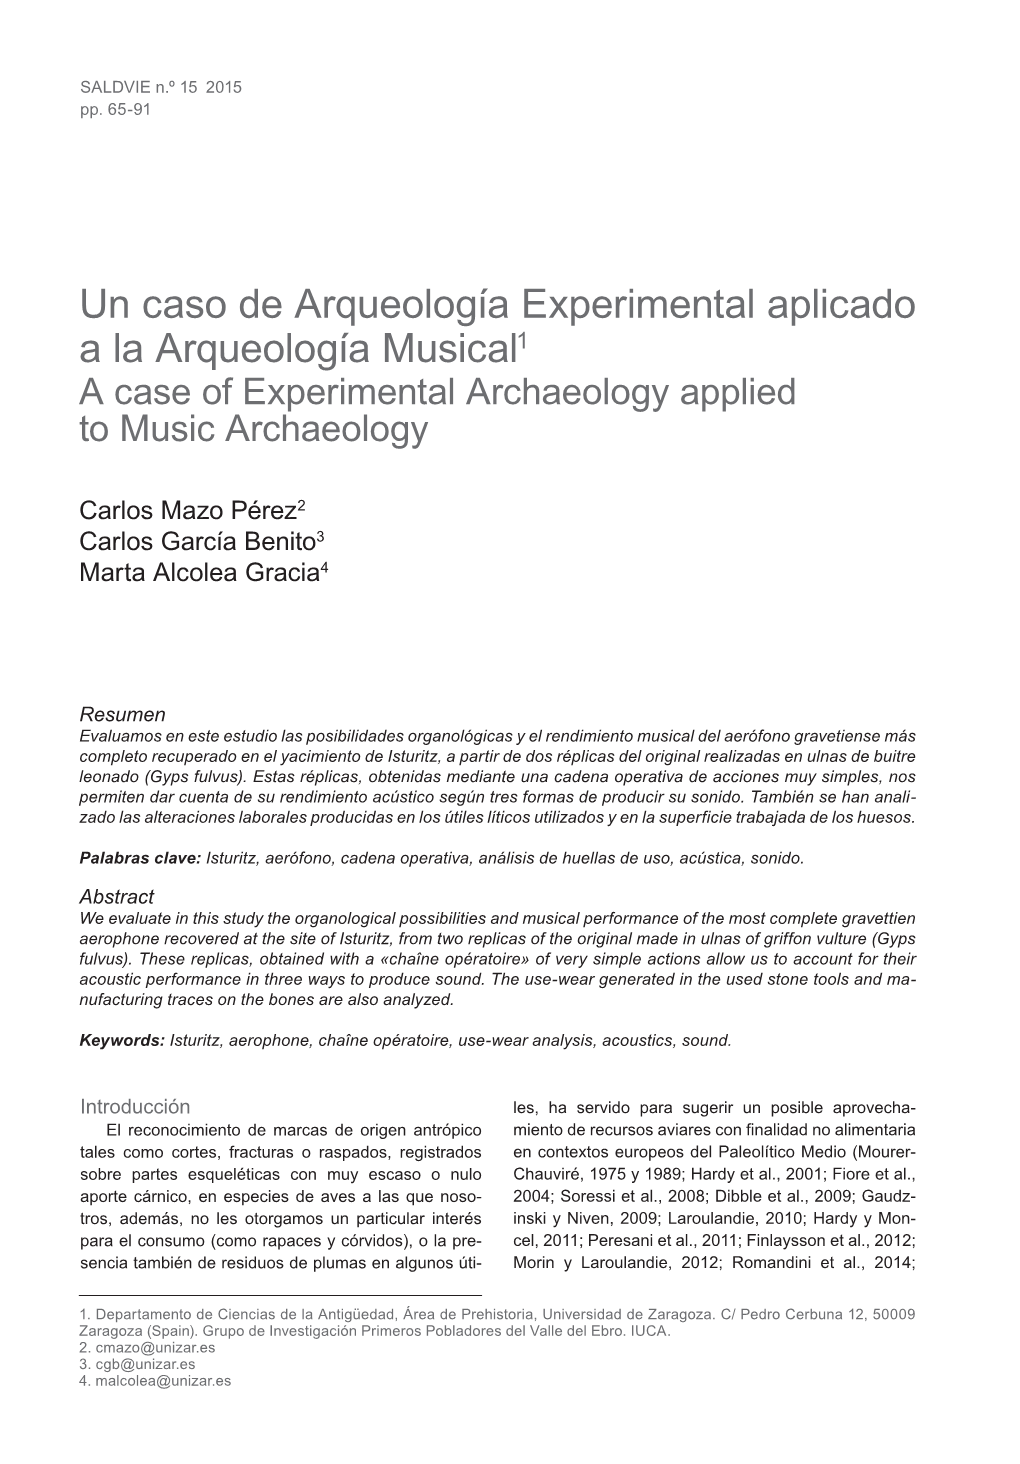 Un Caso De Arqueología Experimental Aplicado a La Arqueología Musical1 a Case of Experimental Archaeology Applied to Music Archaeology